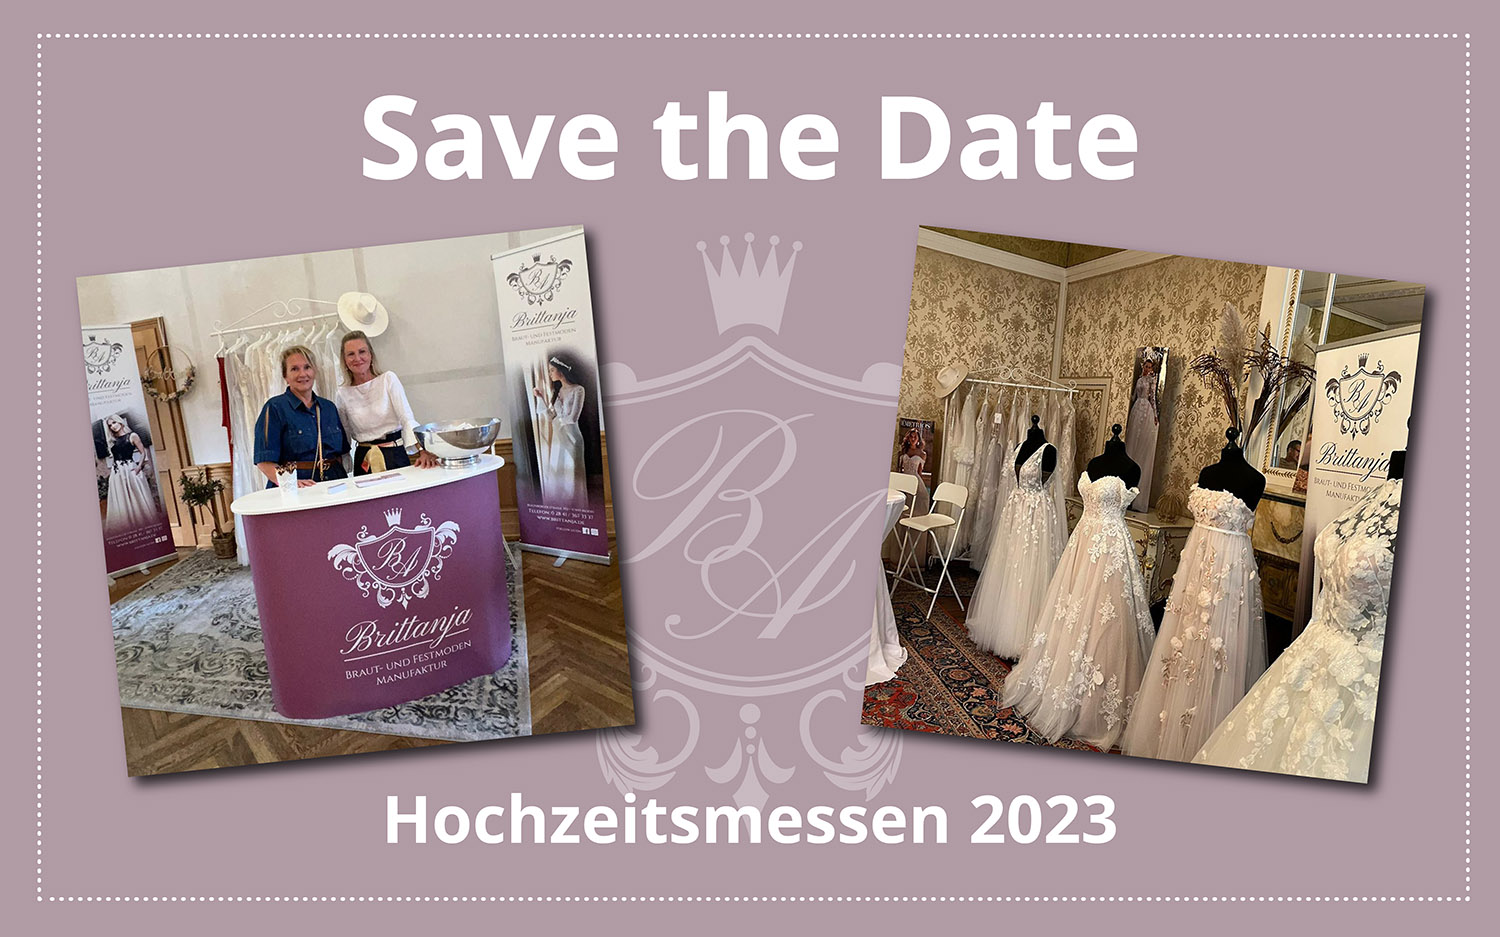 Save the Date - Hochzeitsmessen 2023